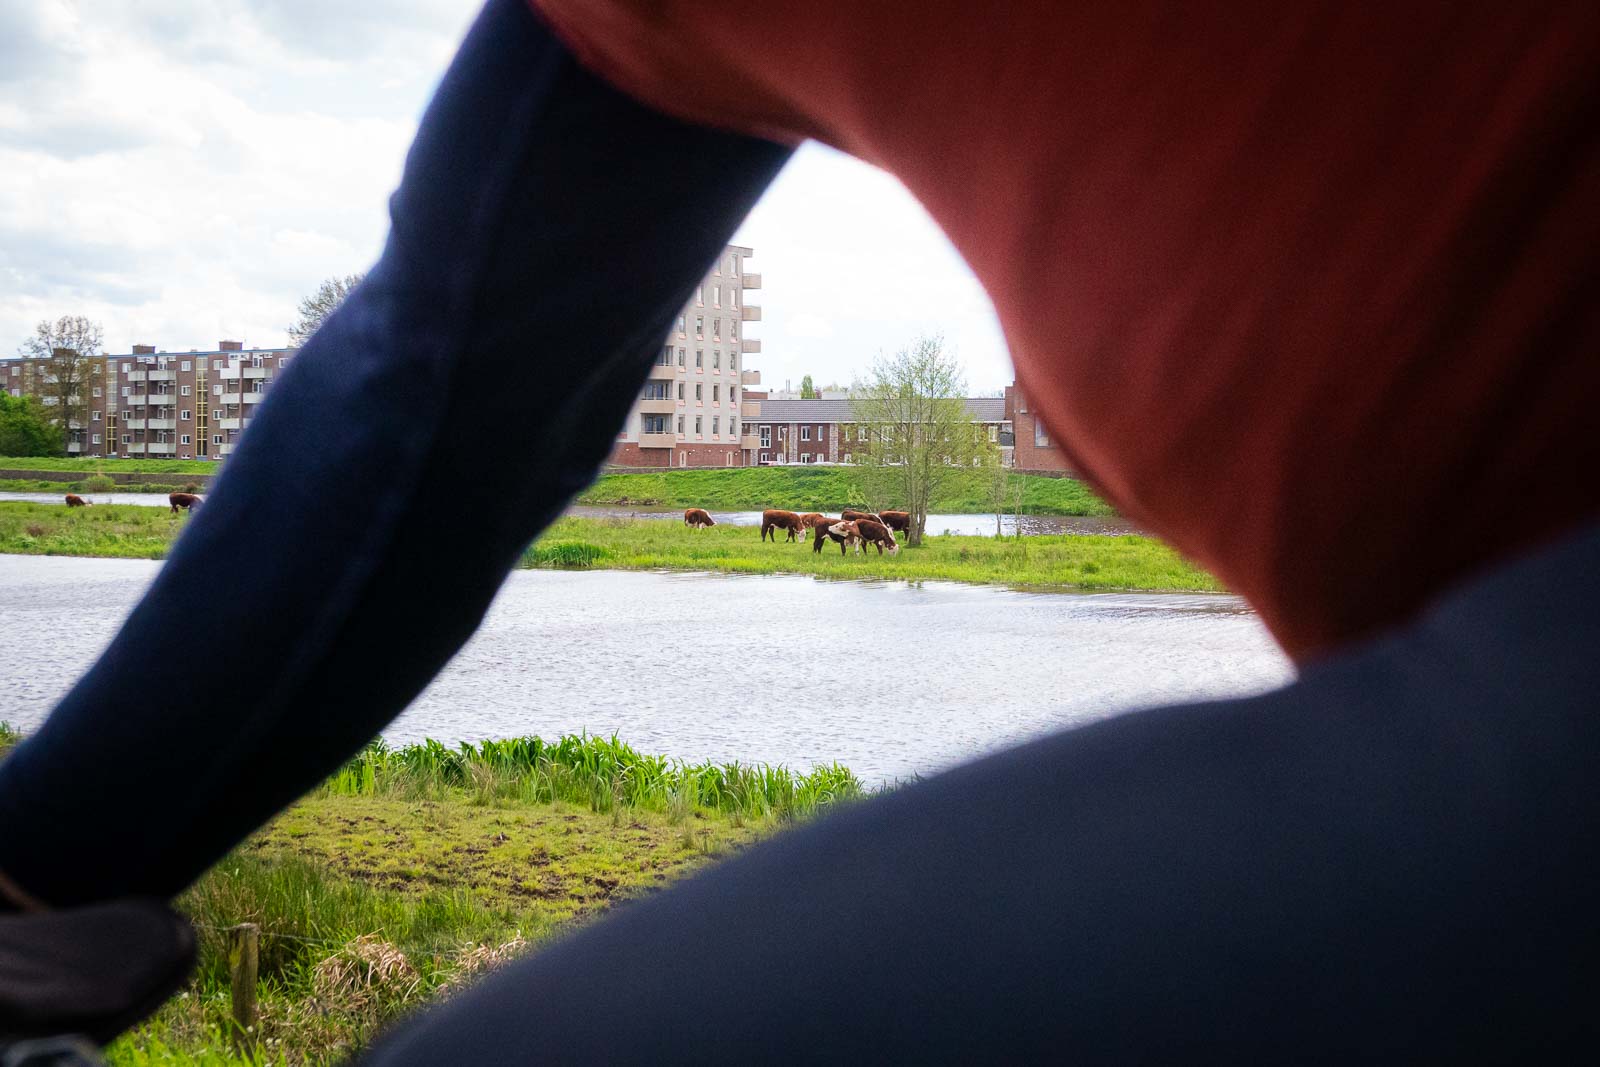 Attraverso un ciclista si vedono le mucche al pascolo su un'isola di fronte a un panorama urbano